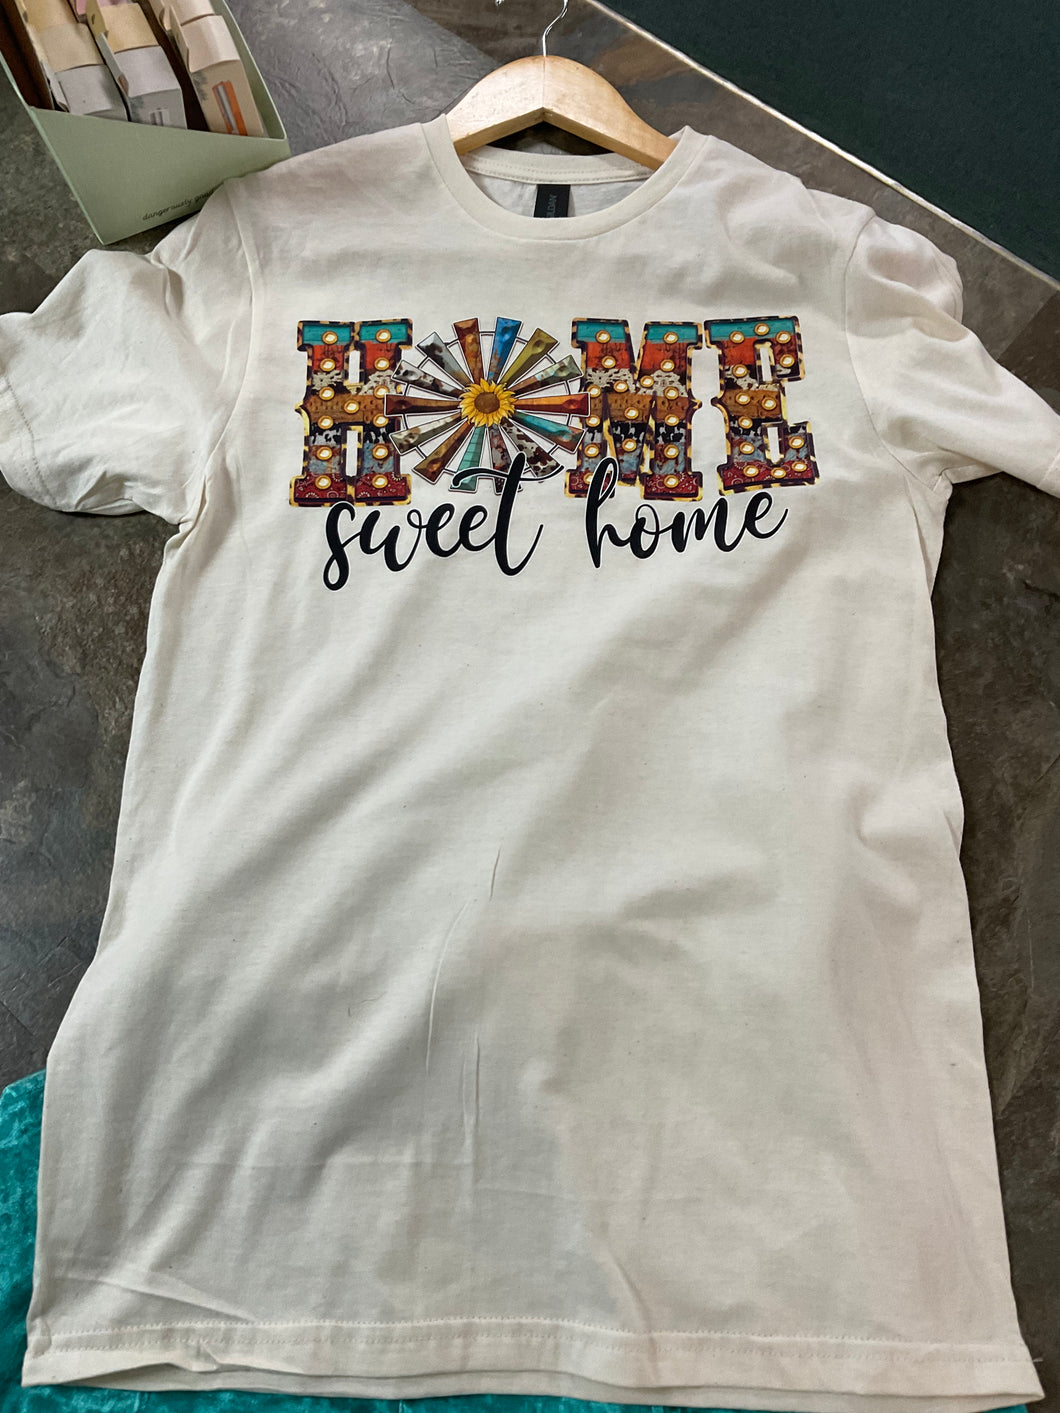 Home Sweet Home Printed T shirt